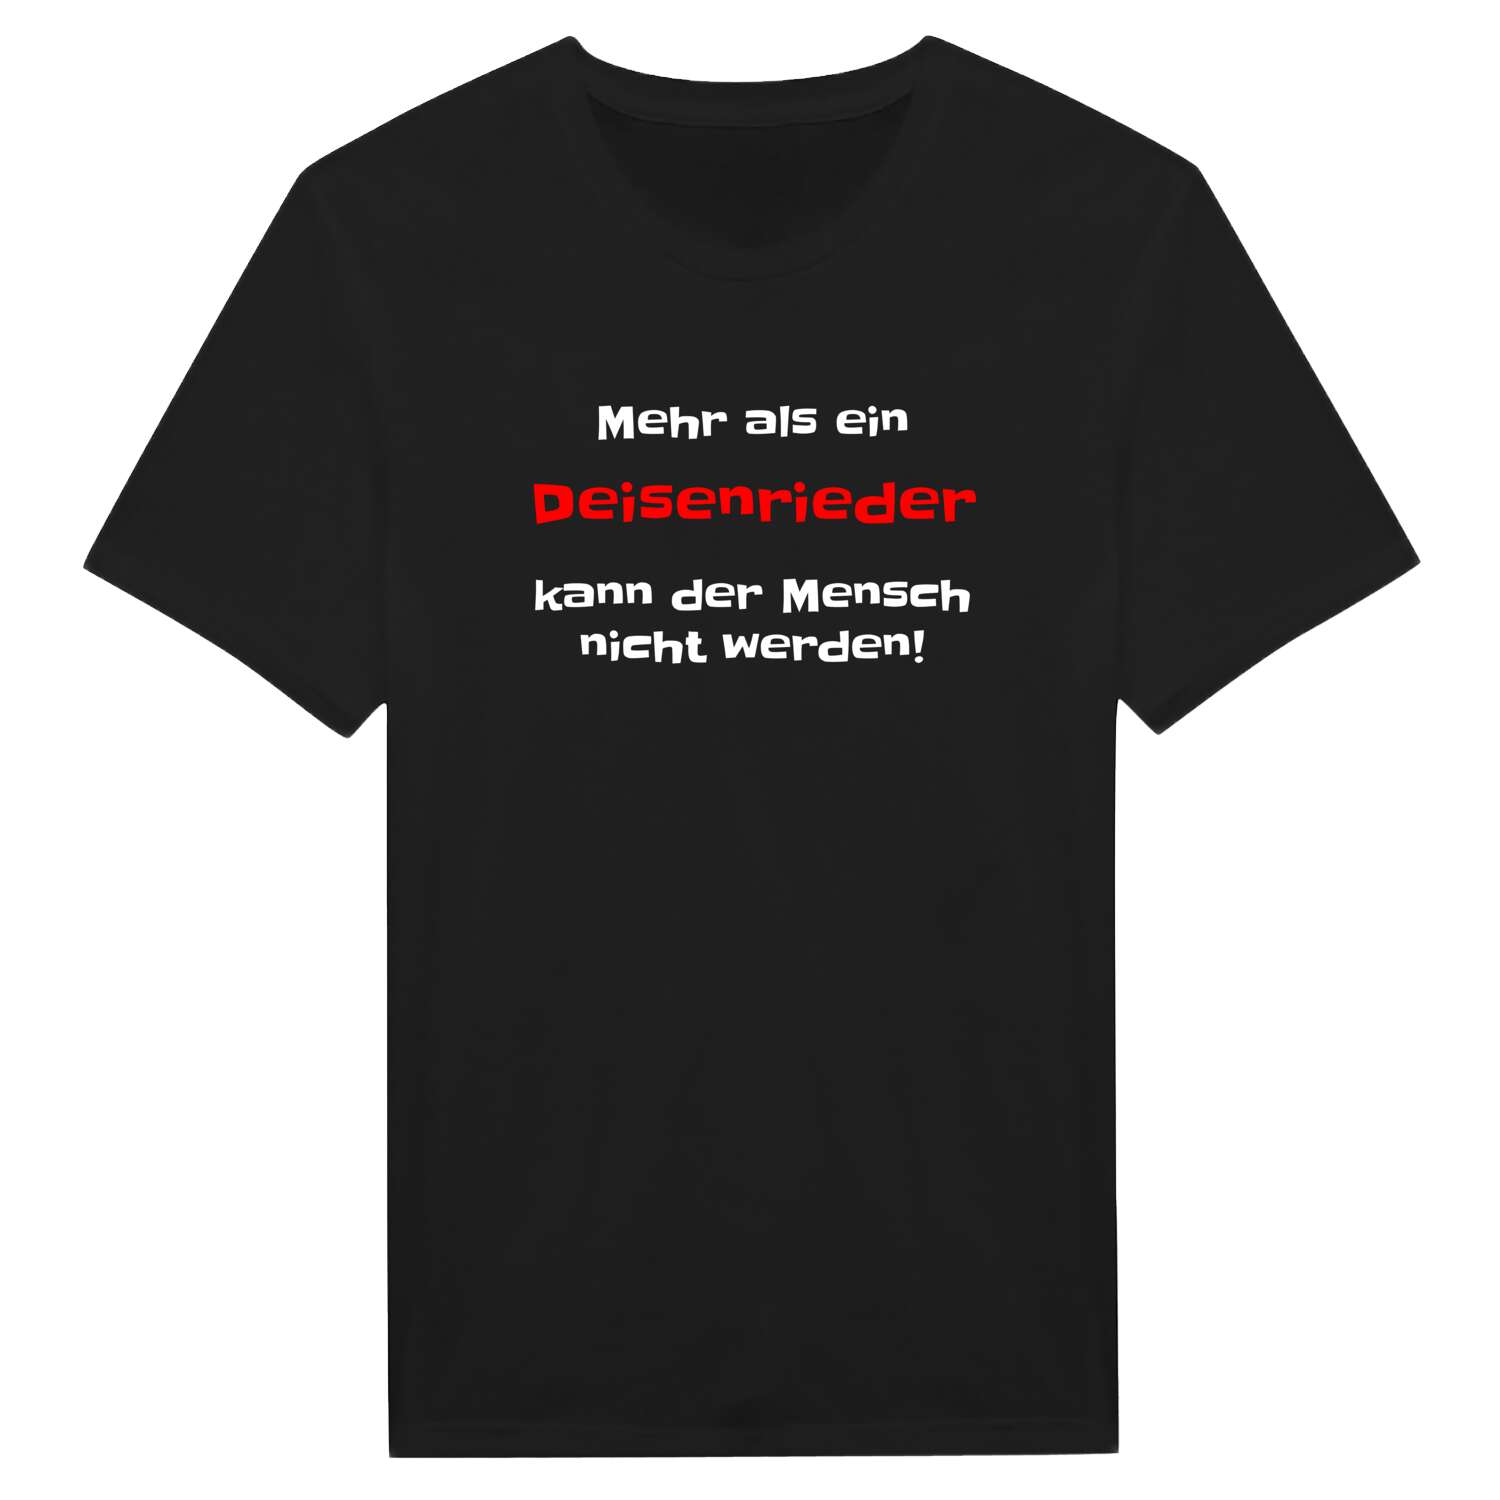 Deisenried T-Shirt »Mehr als ein«